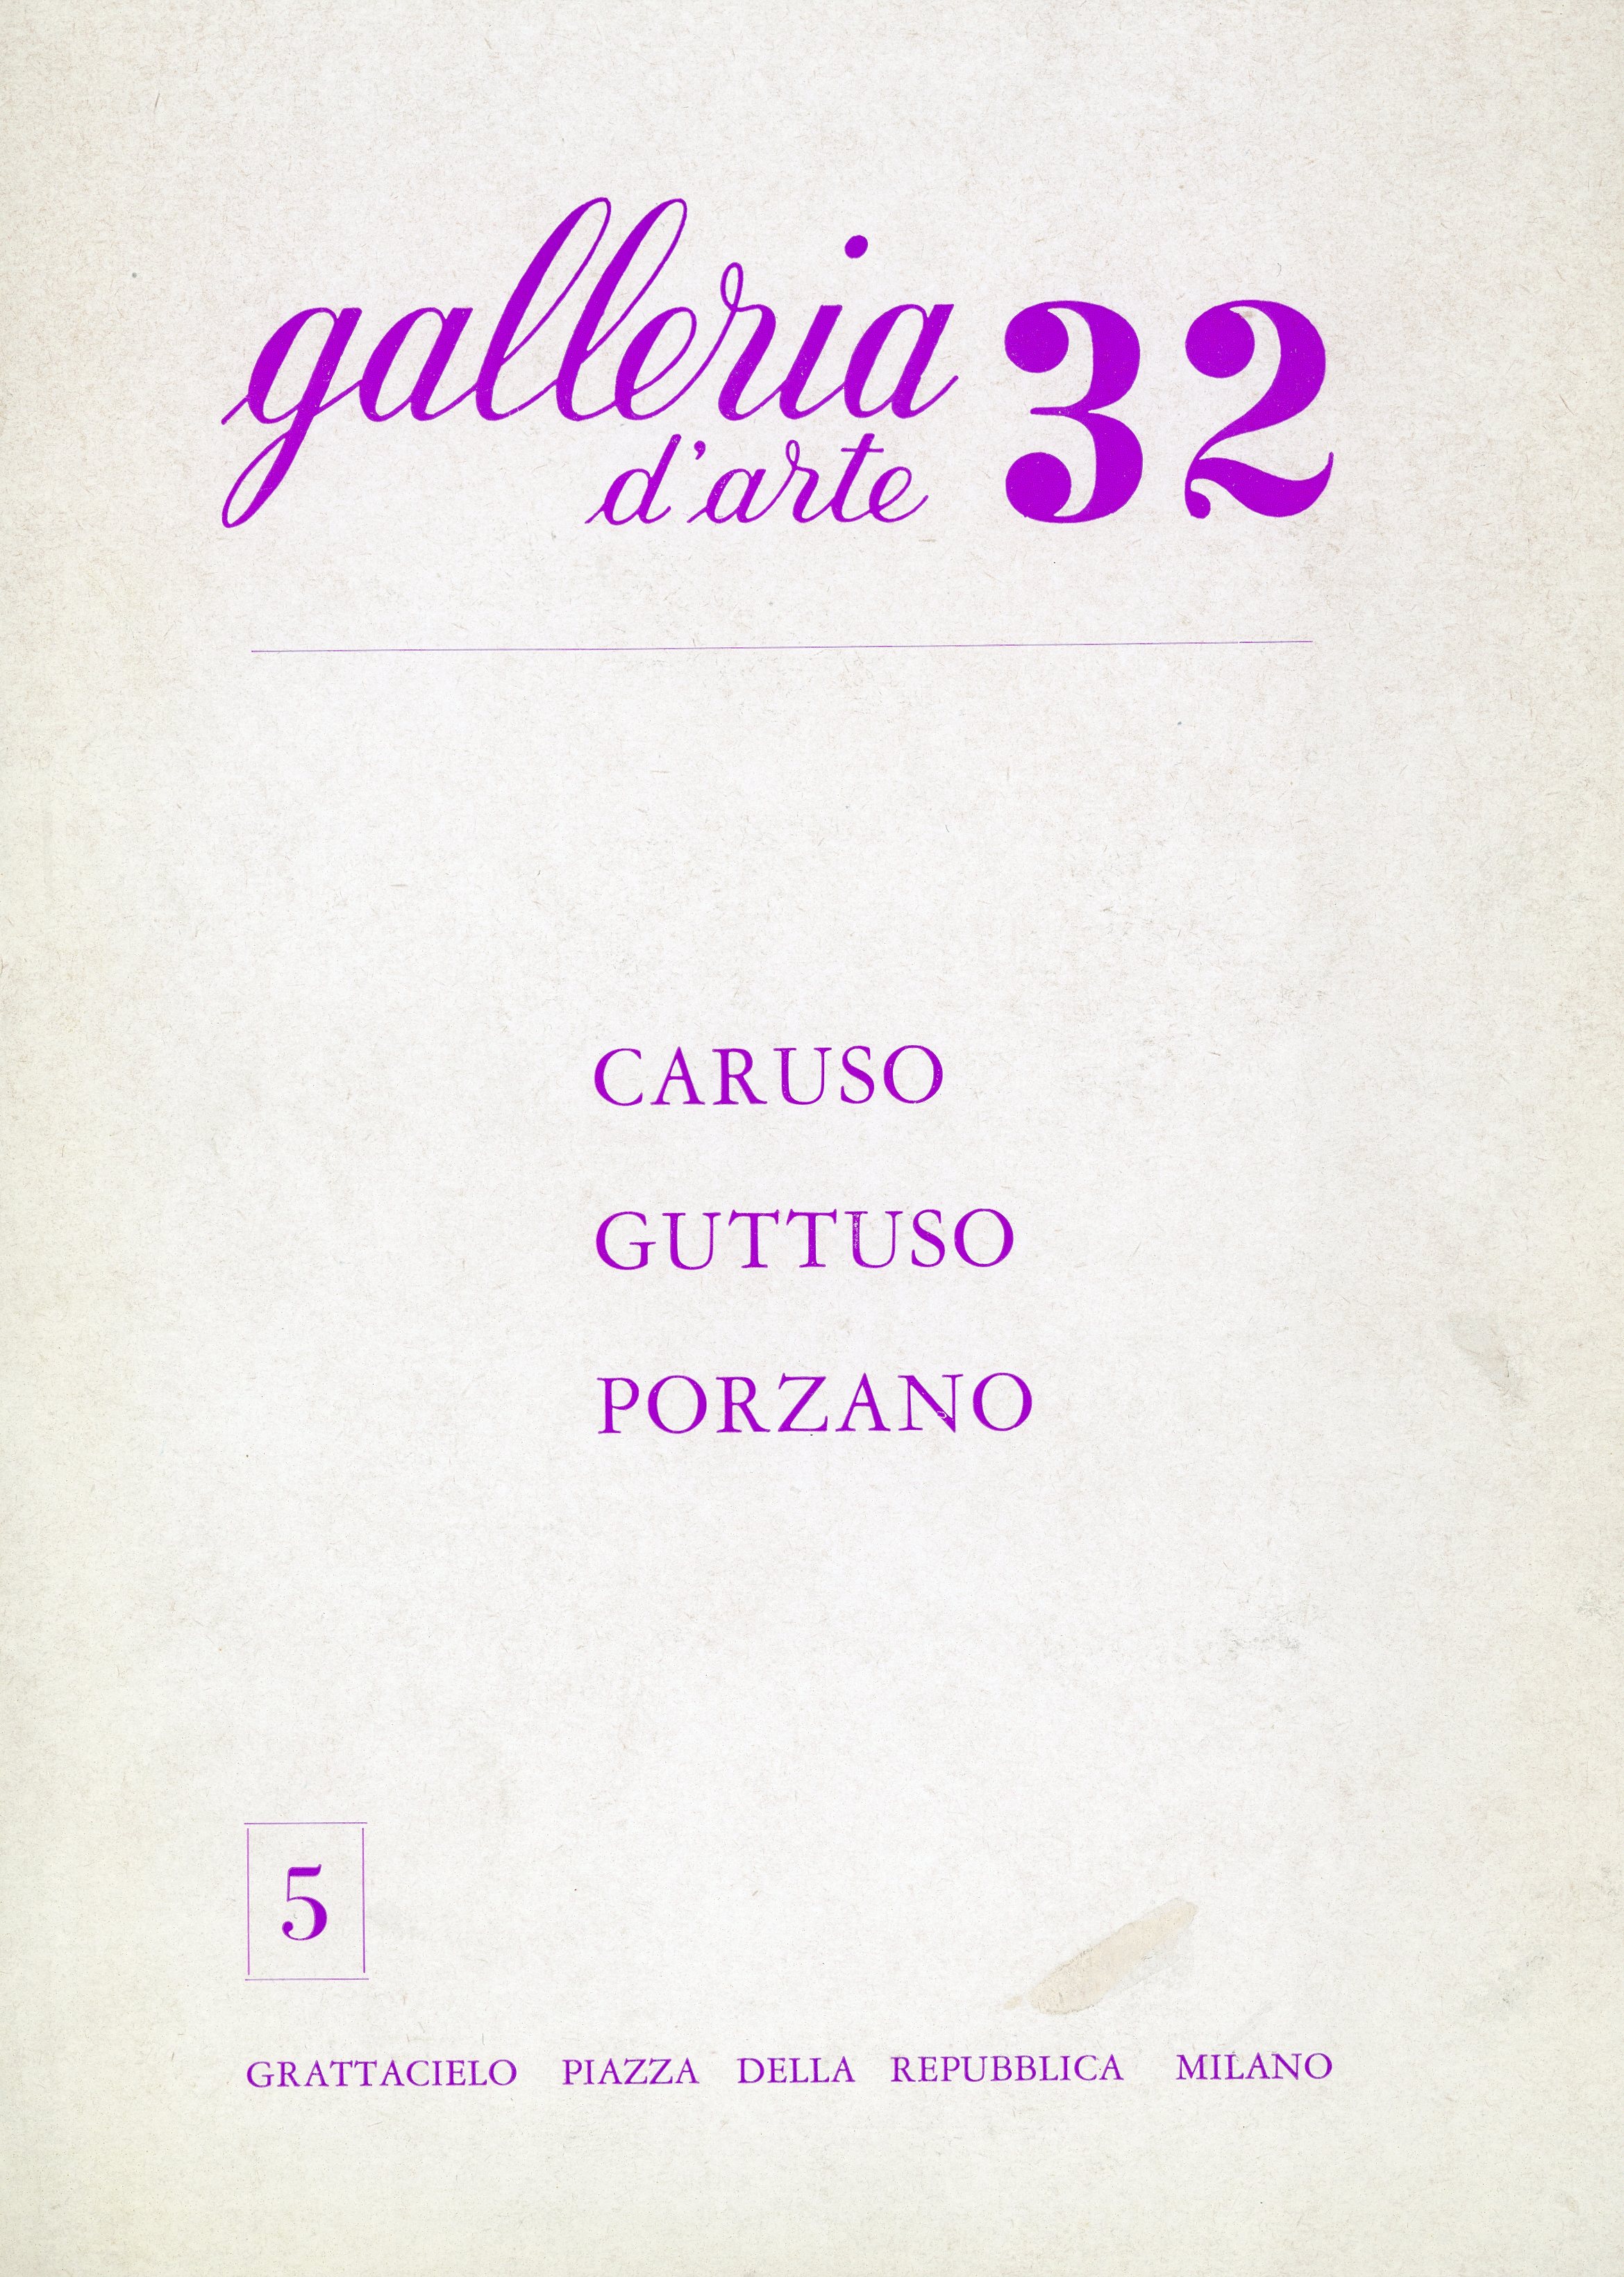 Galleria 32 